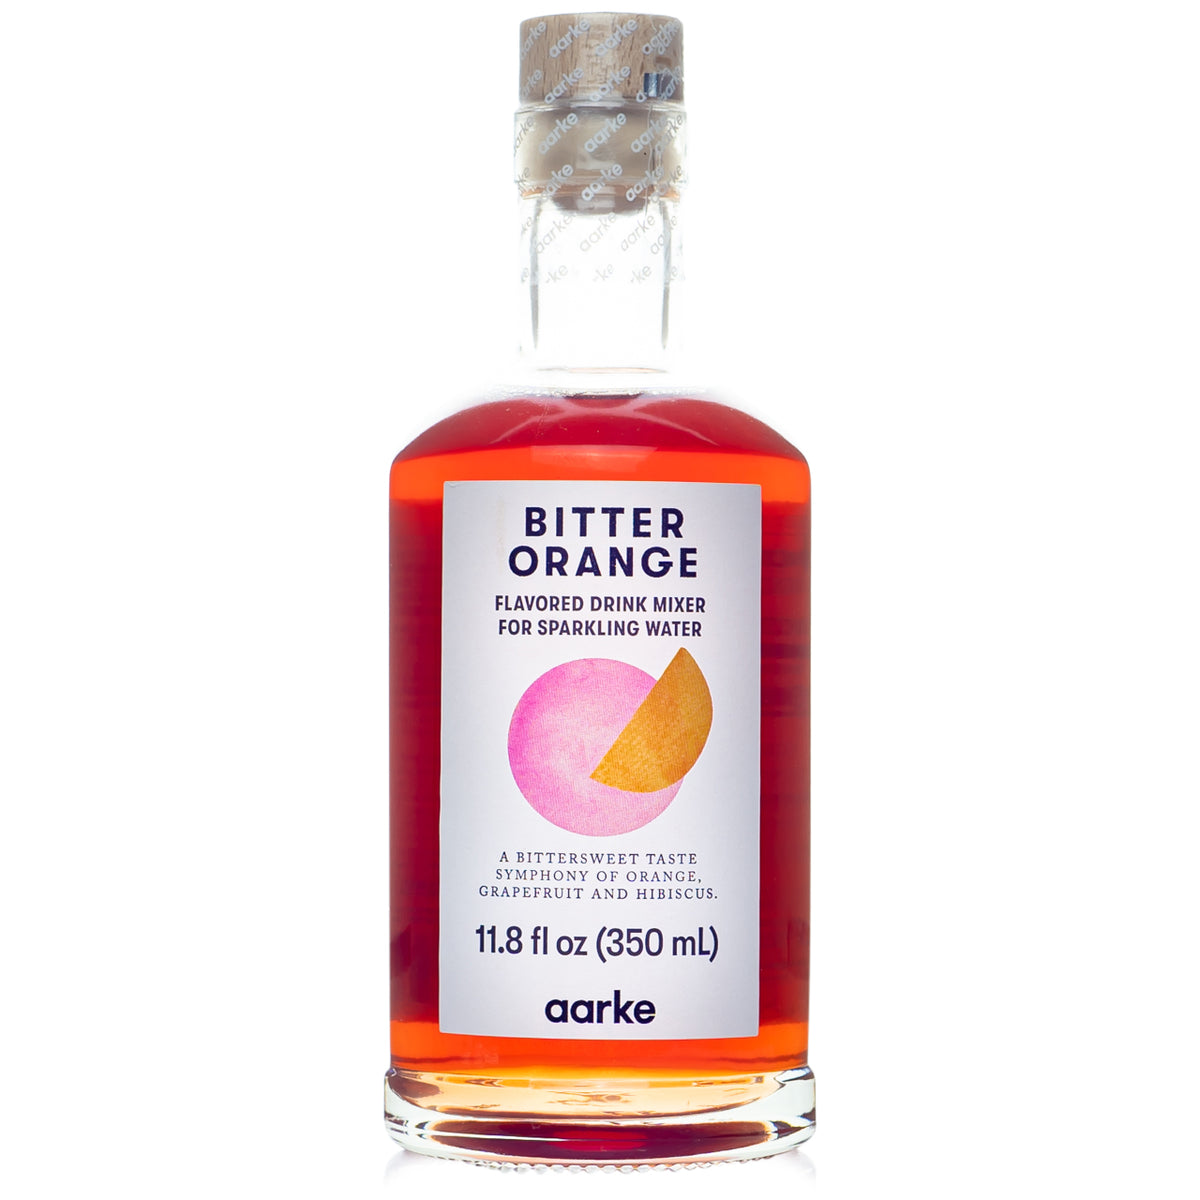 Aarke Bitter Orange Drink Mixer — Bitters & Bottles